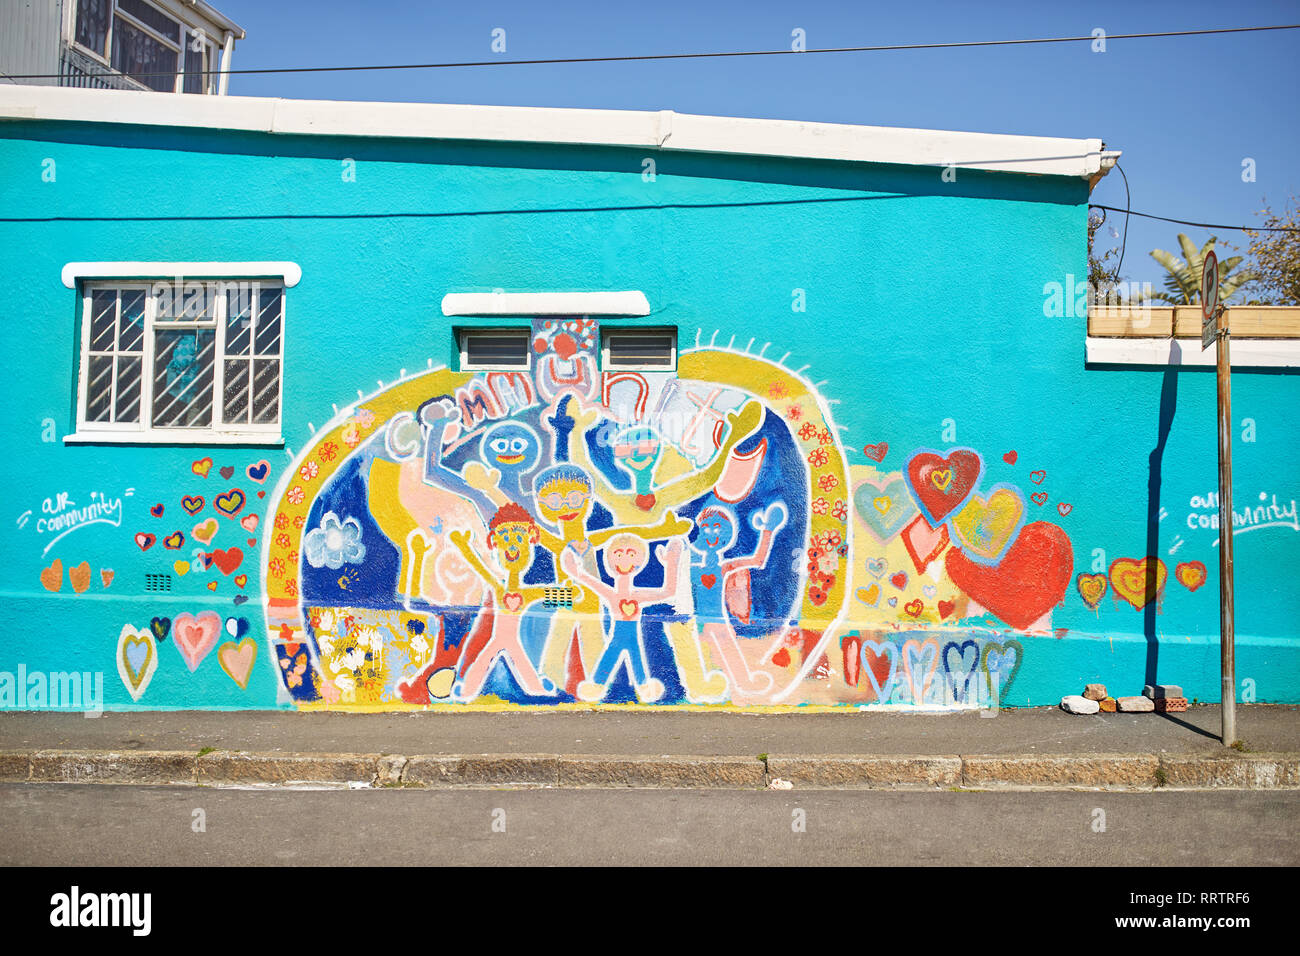 Vivace comunità murale sulla soleggiata parete urbana Foto Stock